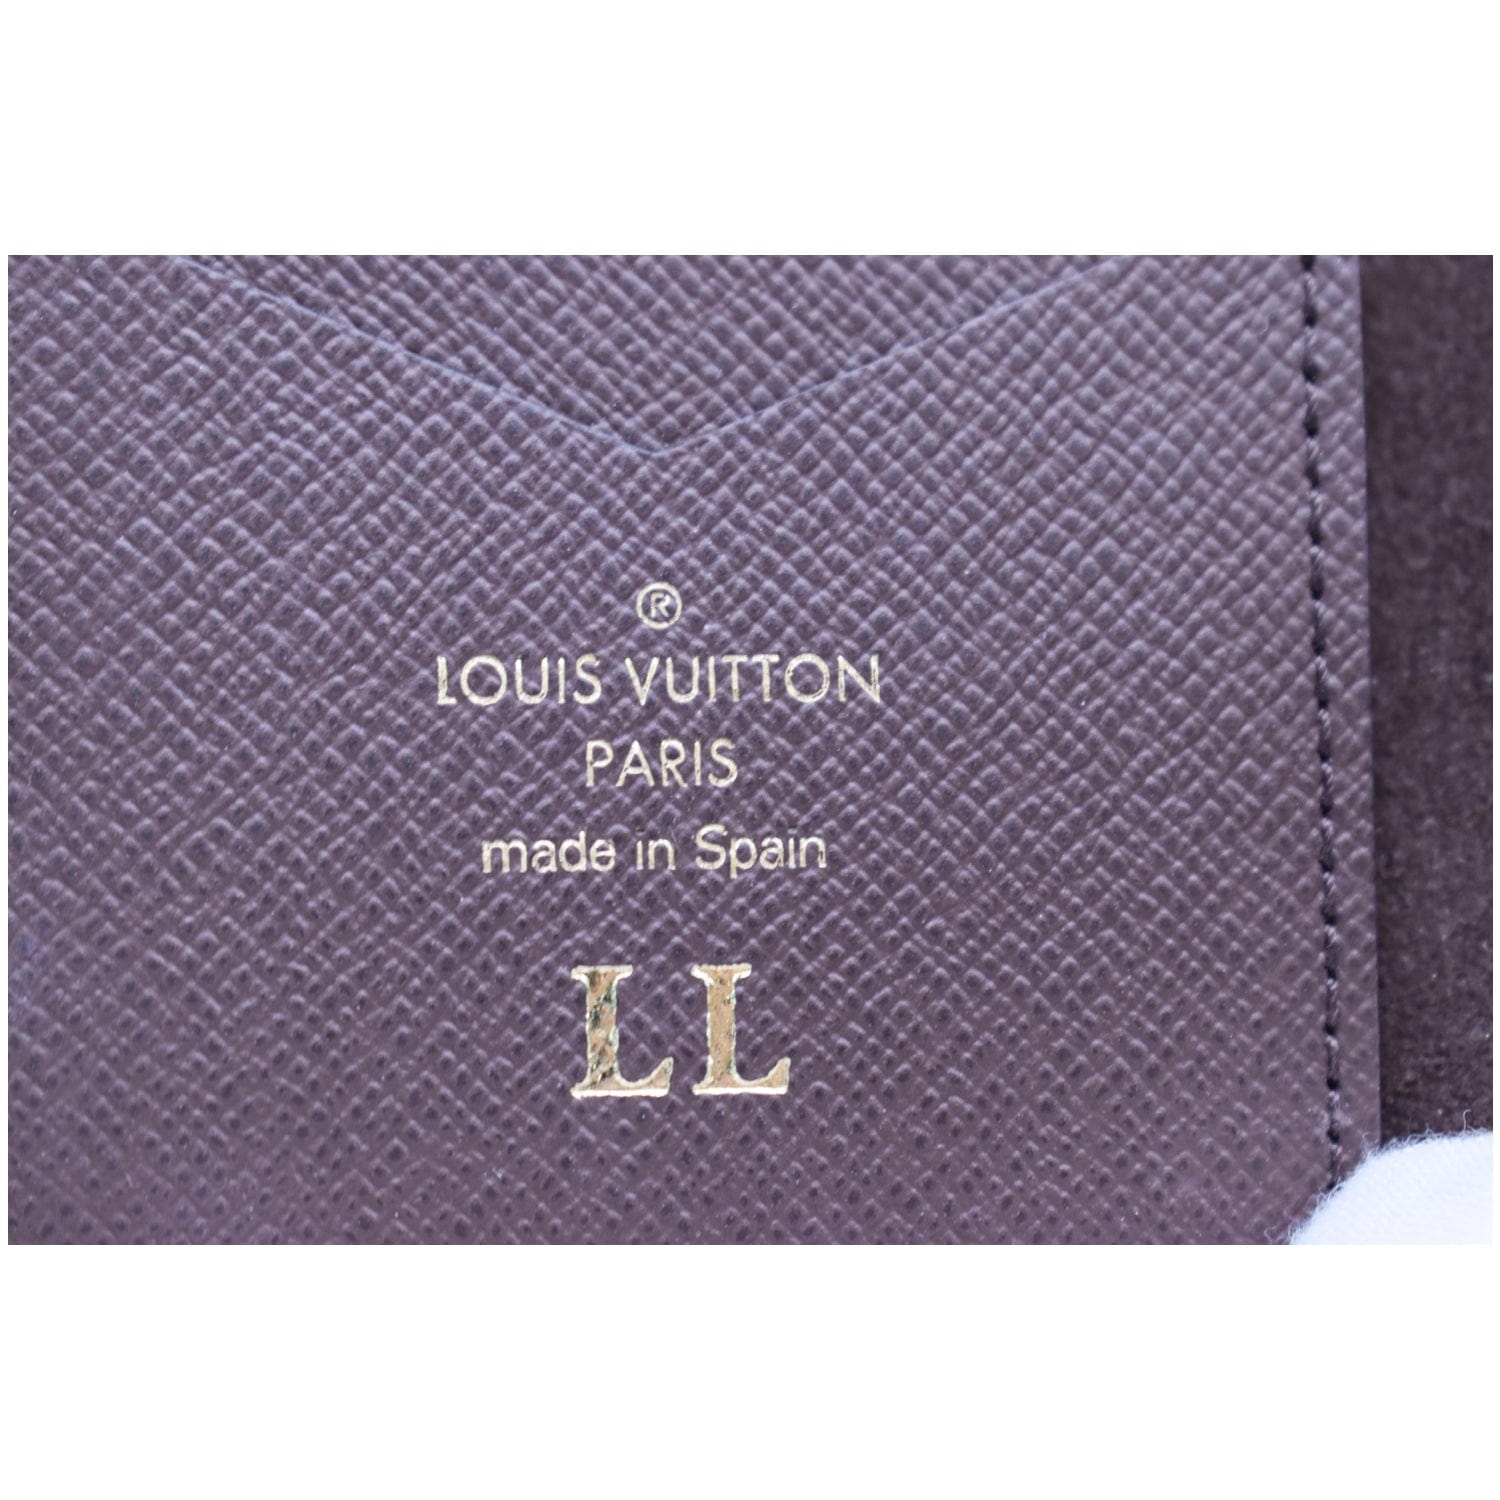 Authentic Louis Vuitton LV Monogram Folio iPhone X Case Brown Phone Case  Bifold